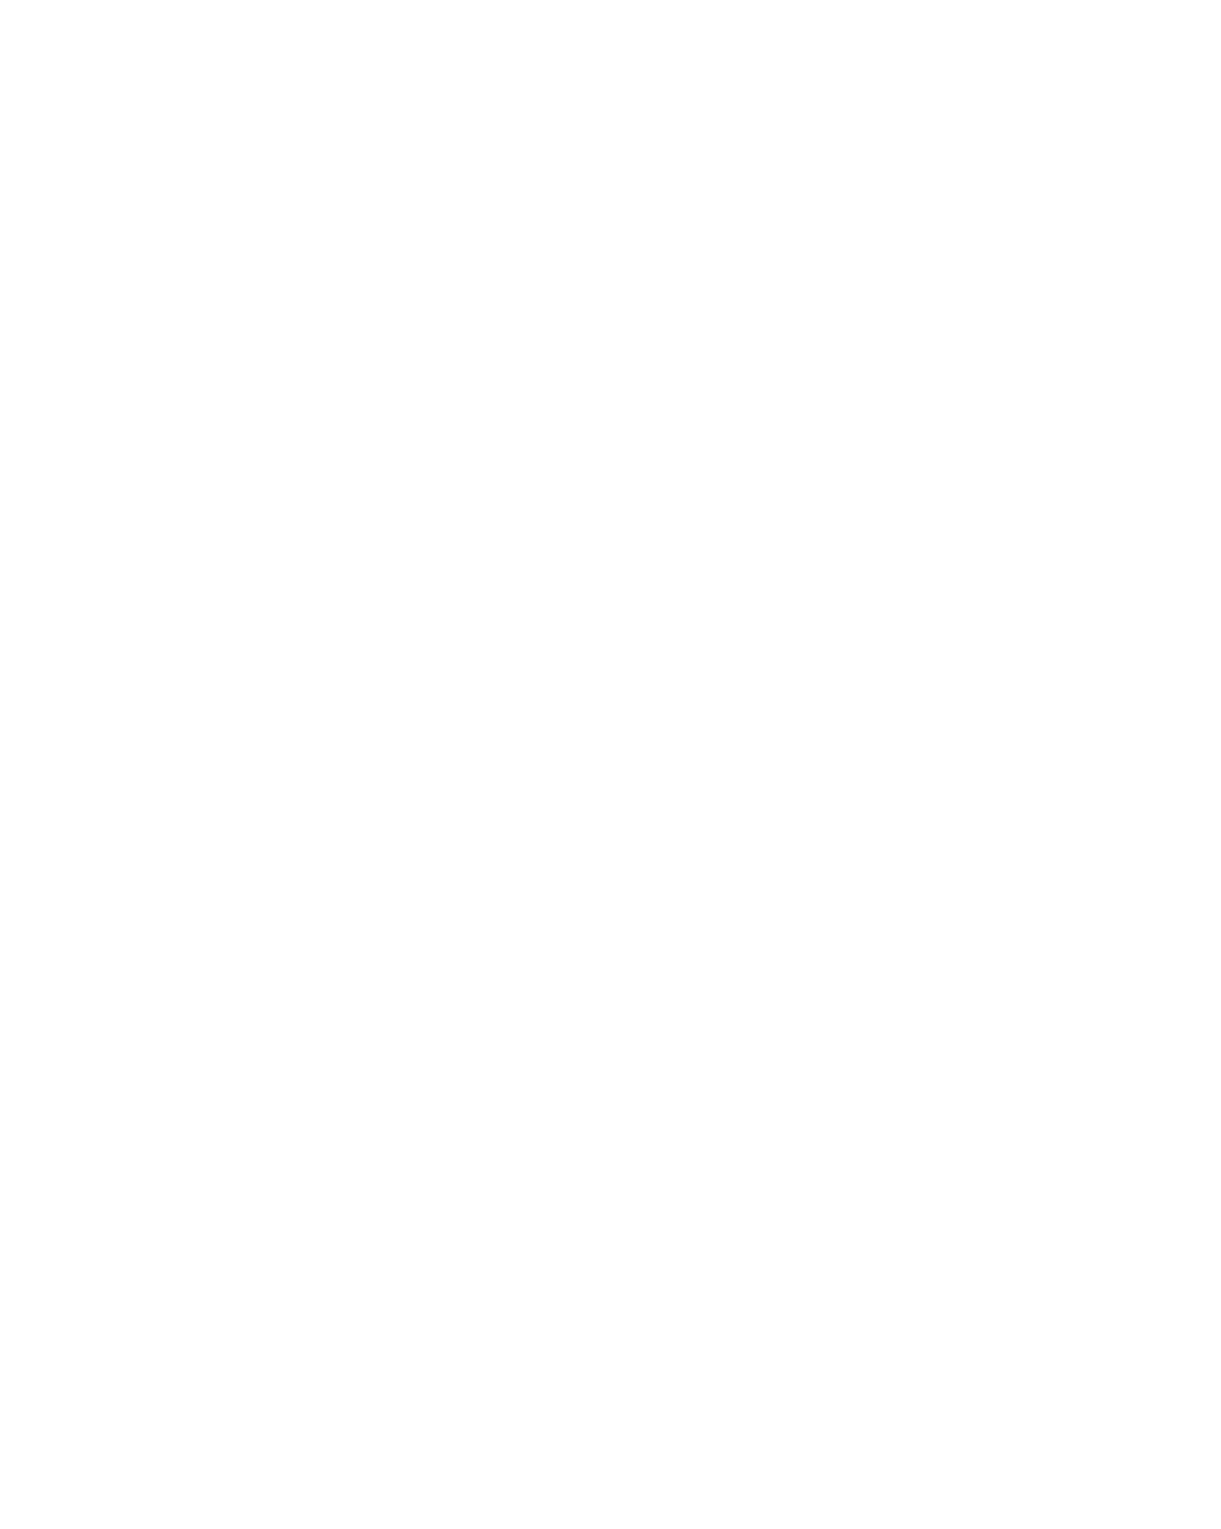 Dollar Industries logo pour fonds sombres (PNG transparent)